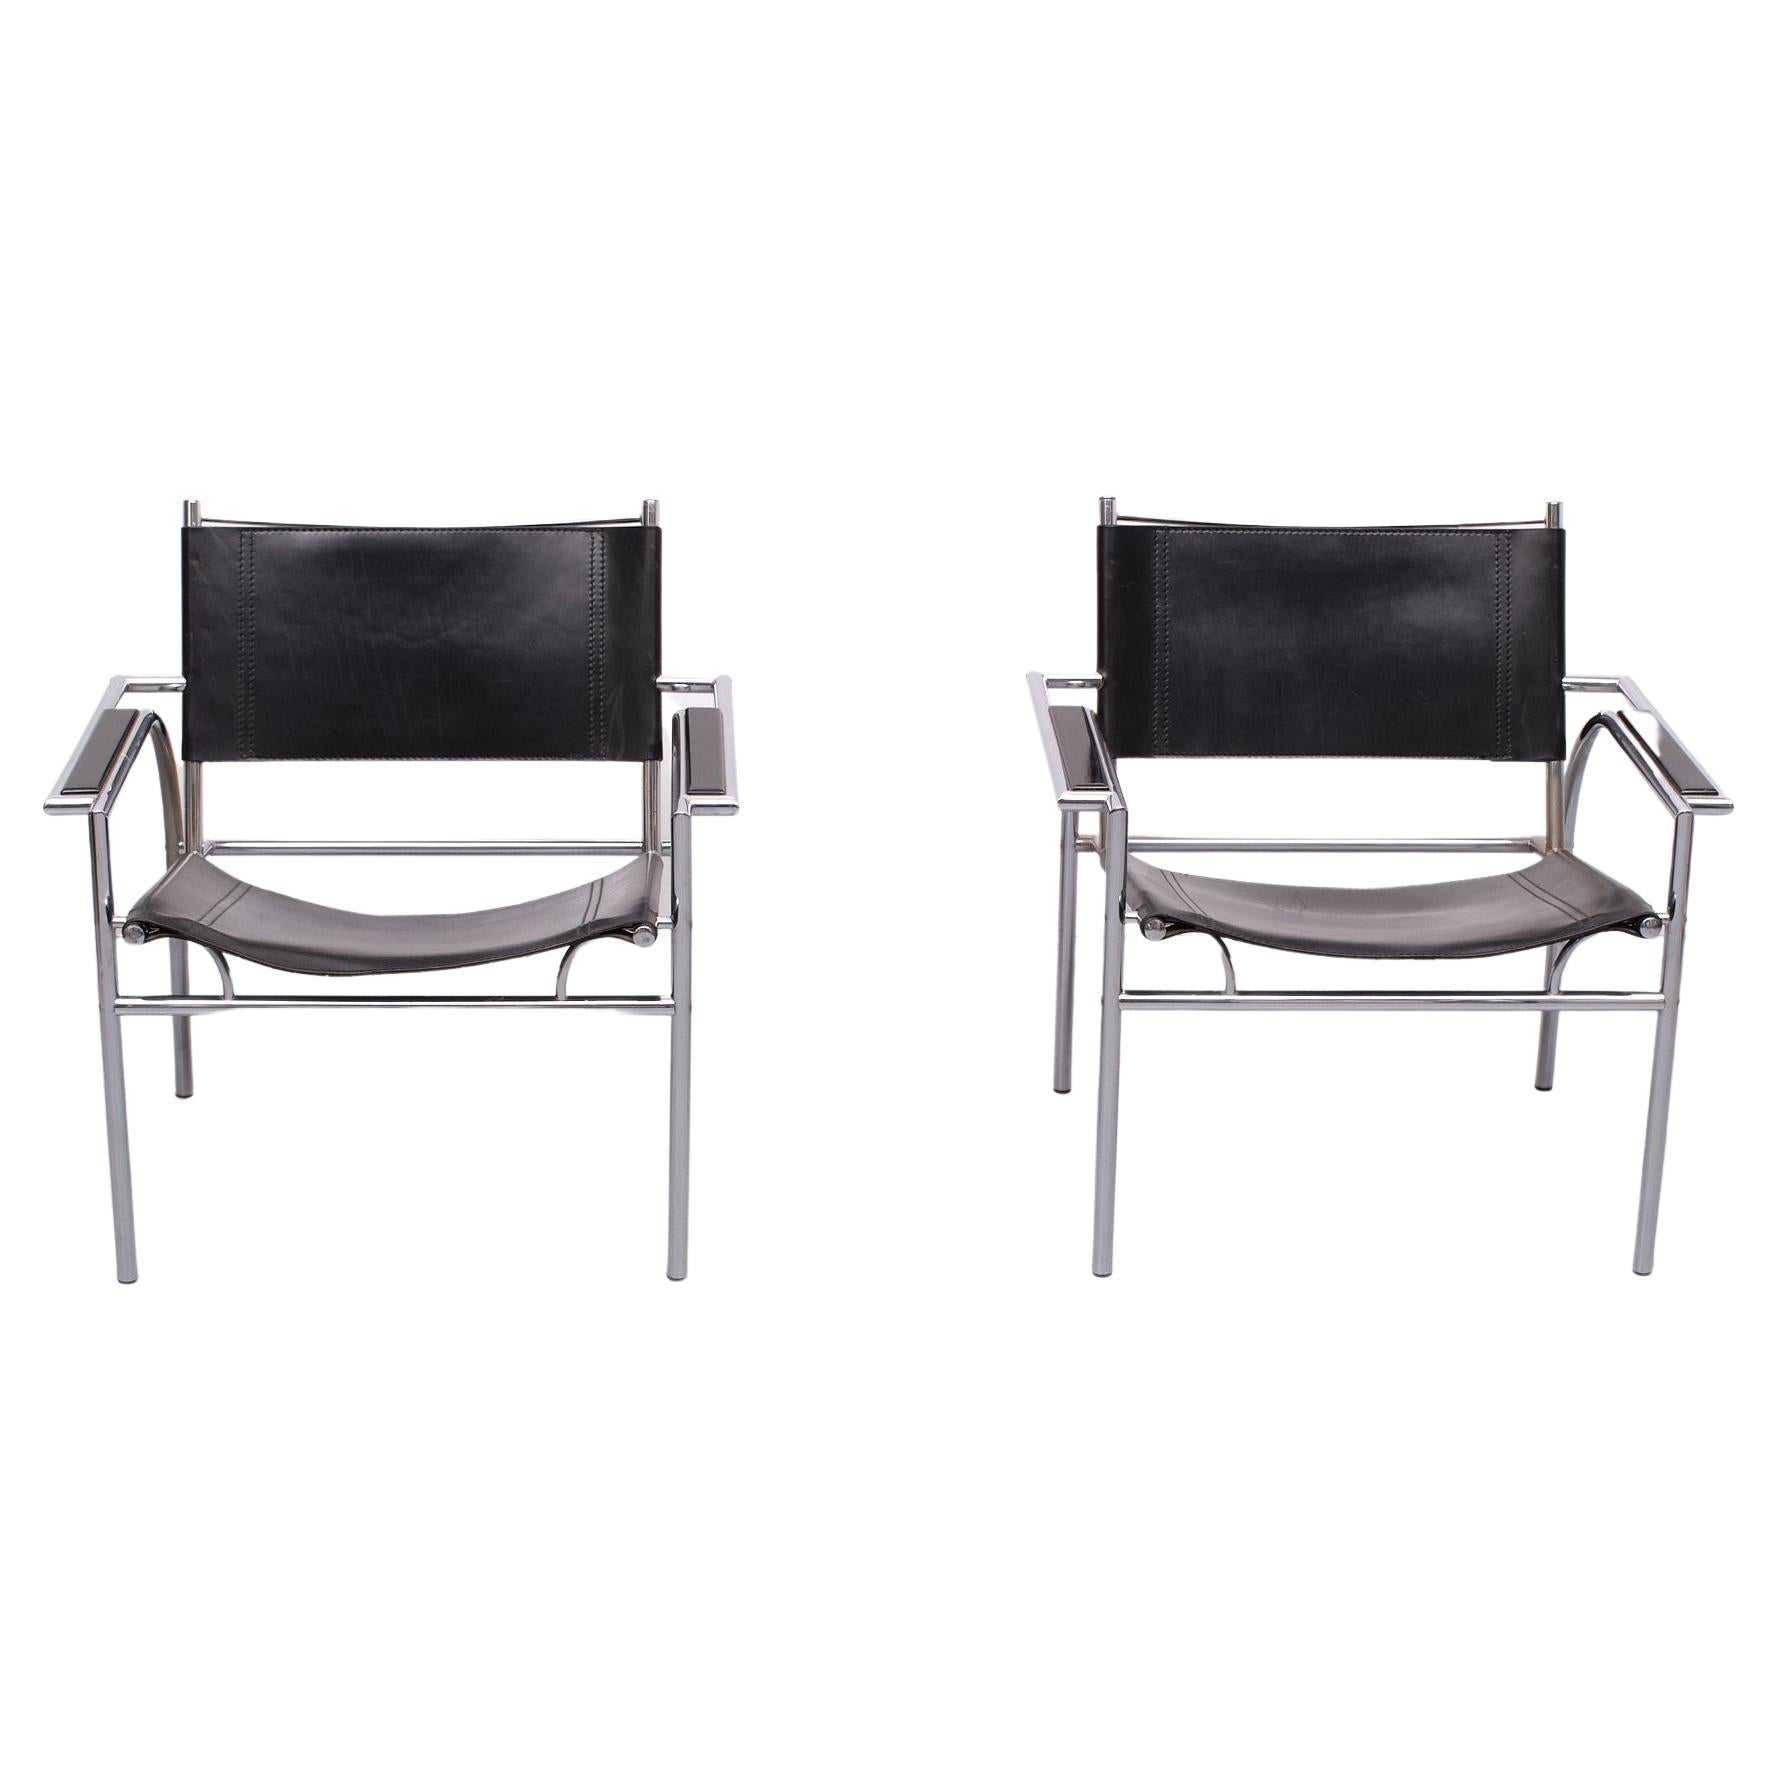 Dieser Sessel im Design von Gerard Vollenbrock für Leolux, 1980er Jahre, niederländisch 
Der verchromte, geschwungene Rahmen wird mit einer dicken schwarzen Lederpolsterung geliefert.